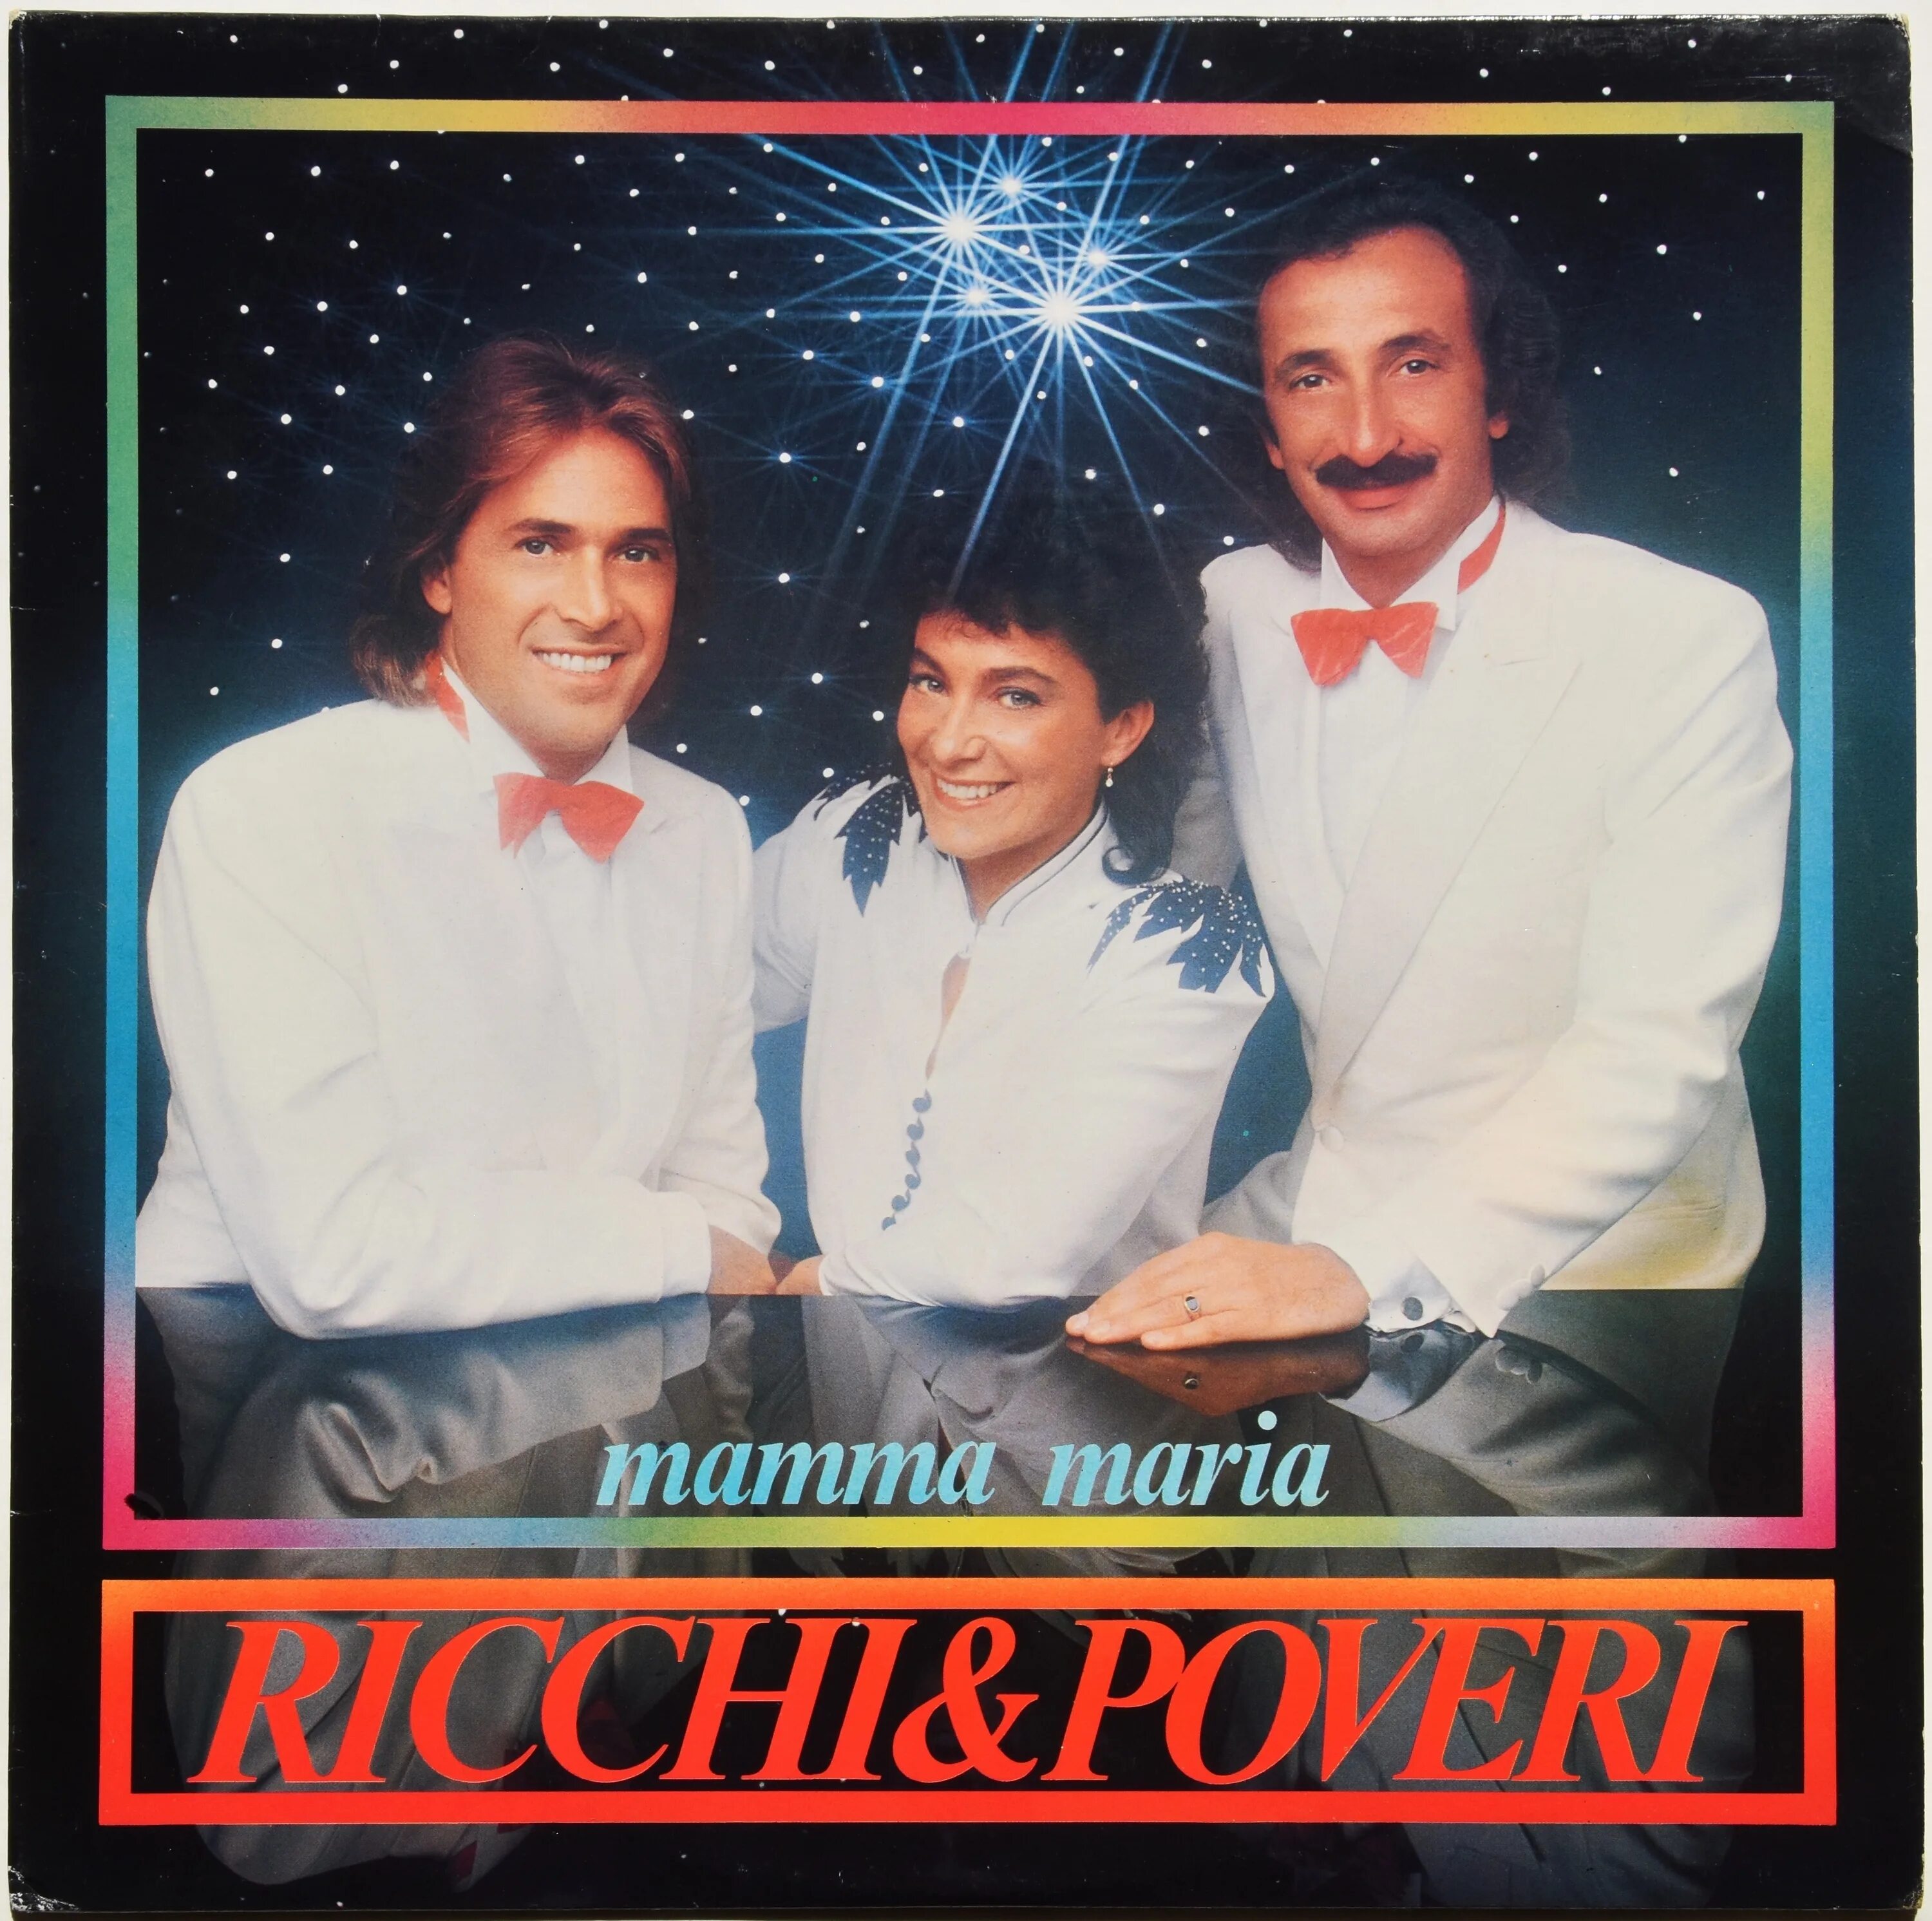 Ricchi e poveri maria. 1982 — Mamma Maria. Обложка трека Ricchi e Poveri mamma Maria. Ricchi e Poveri - mama Maria альбом. Альбом Рики е повери 1983 года.